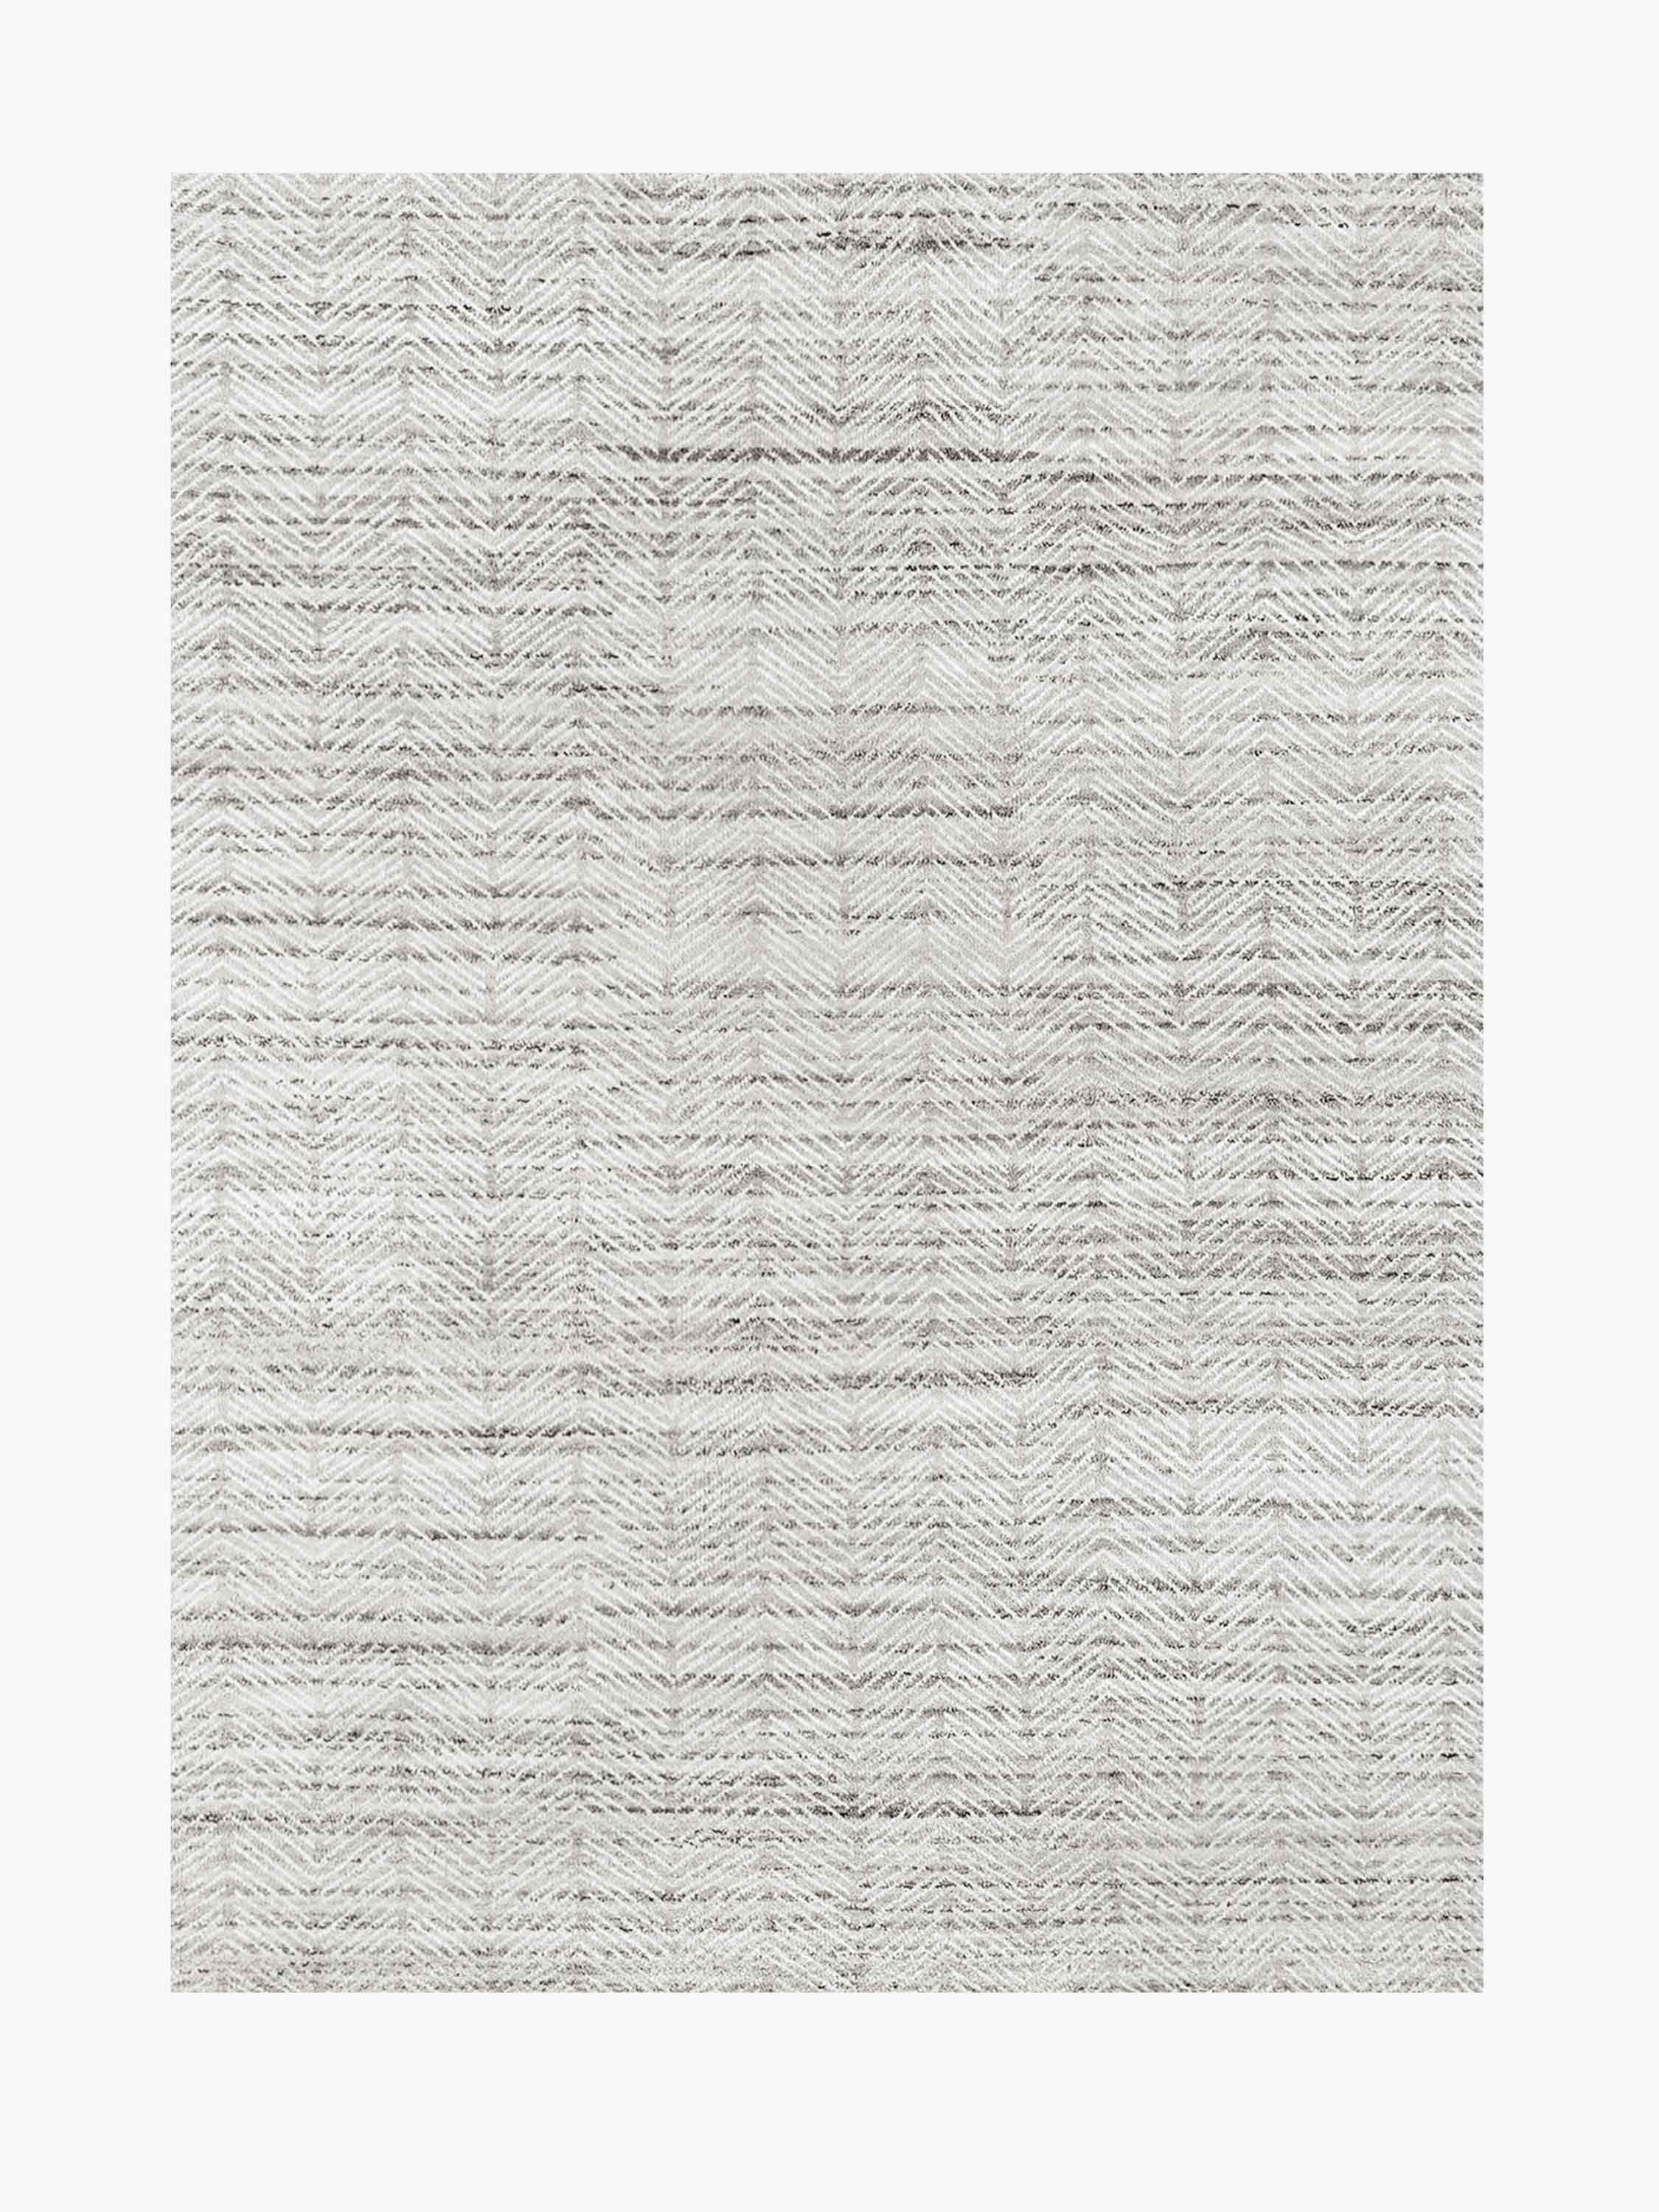 For Sale: Gray (Silver/White) Ben Soleimani Alia Rug– Hand-woven Chevron Wool + Viscose Black/Gray 9'x12'